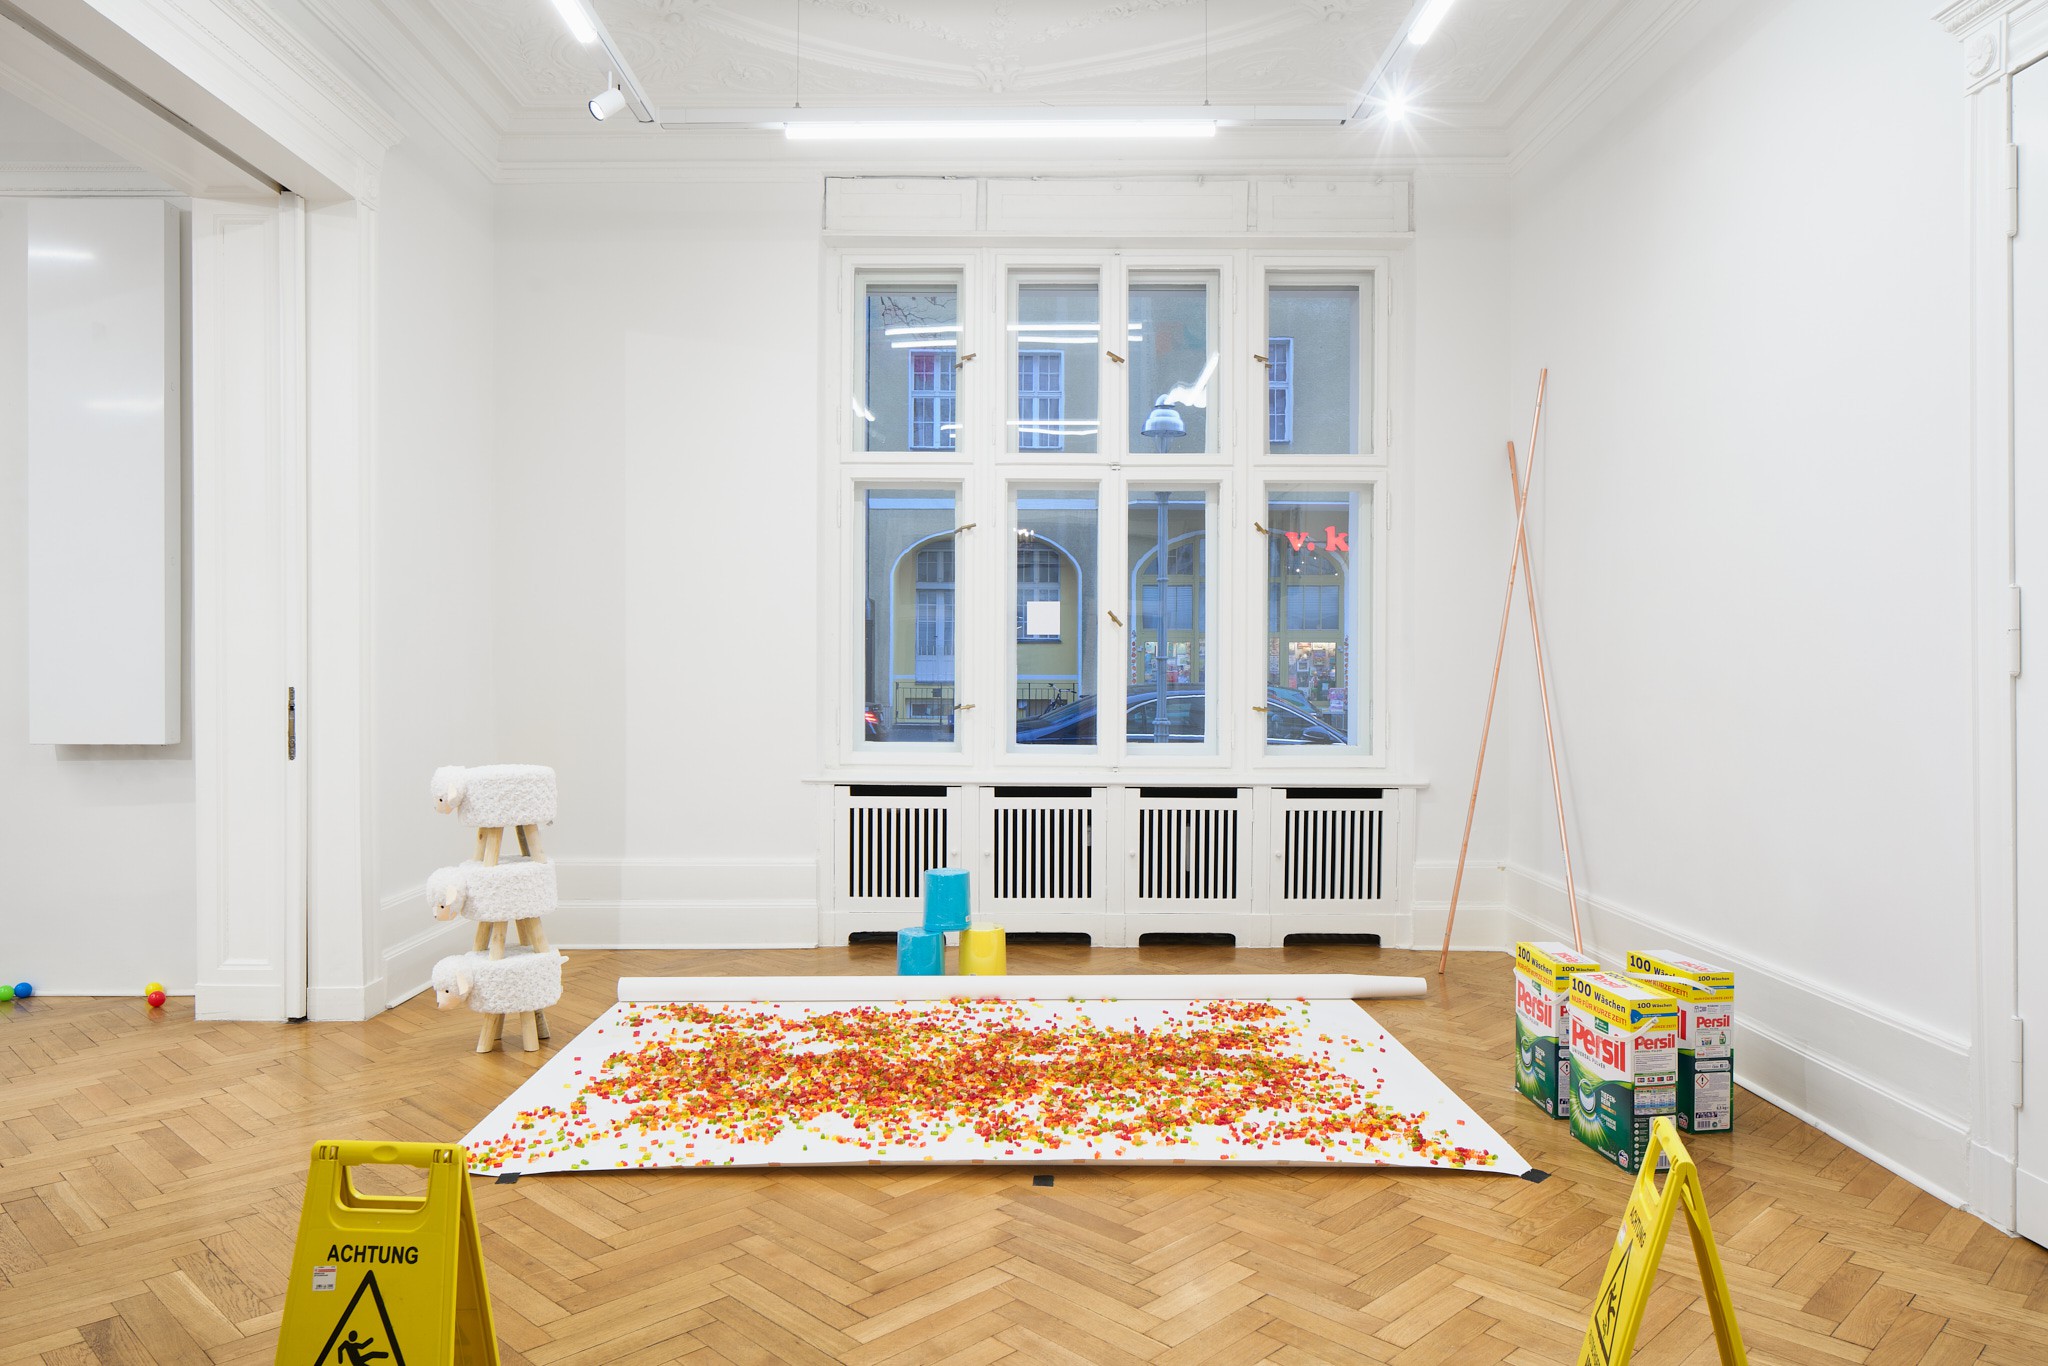 Installation view, fünfdreier, Société, Berlin, 2020